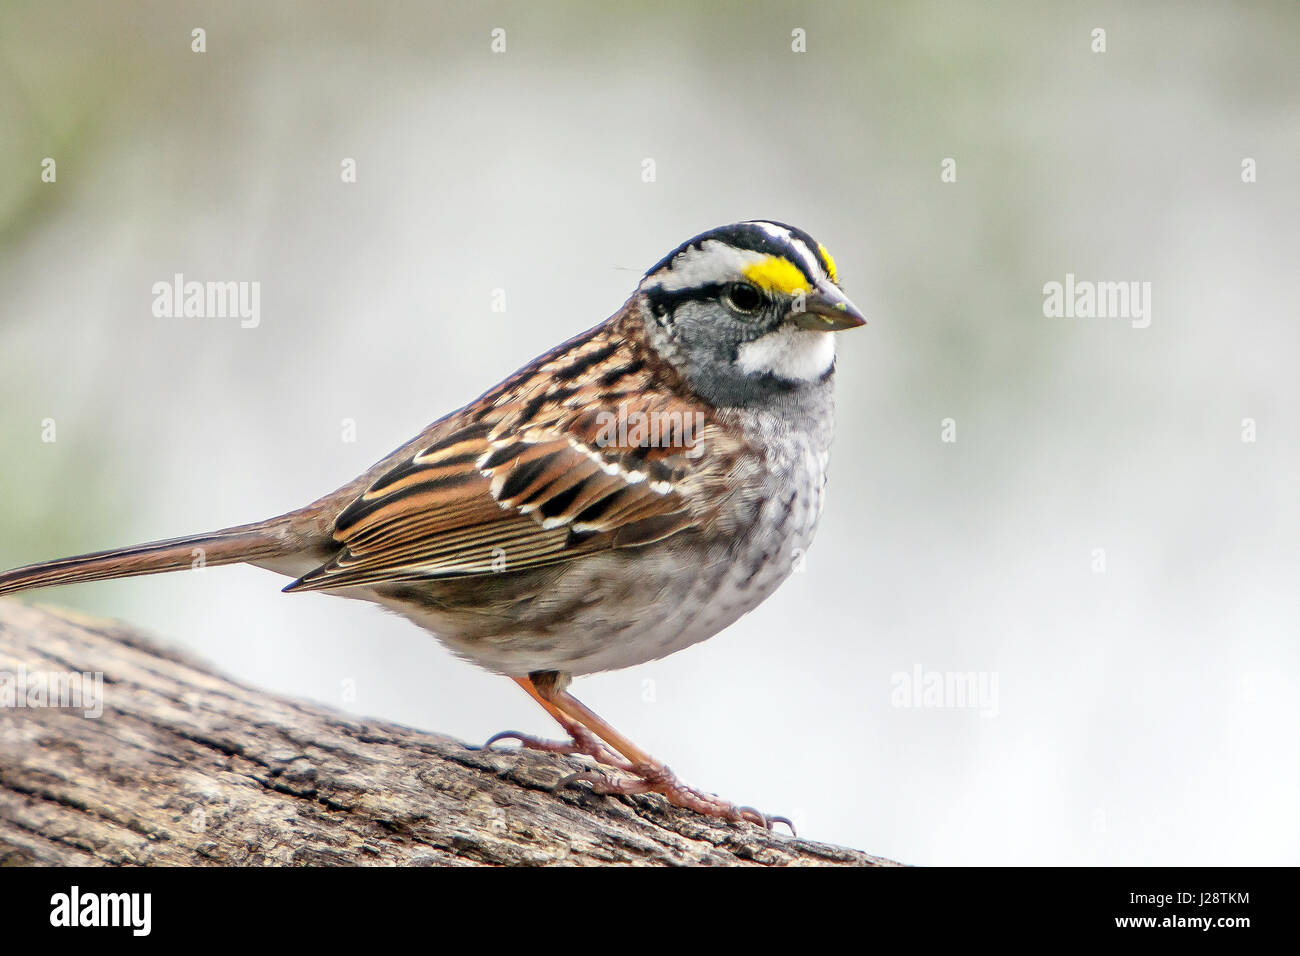 White-throated Sparrow [Zonotrichia albicollis]. Central Park, NYC. Stock Photo